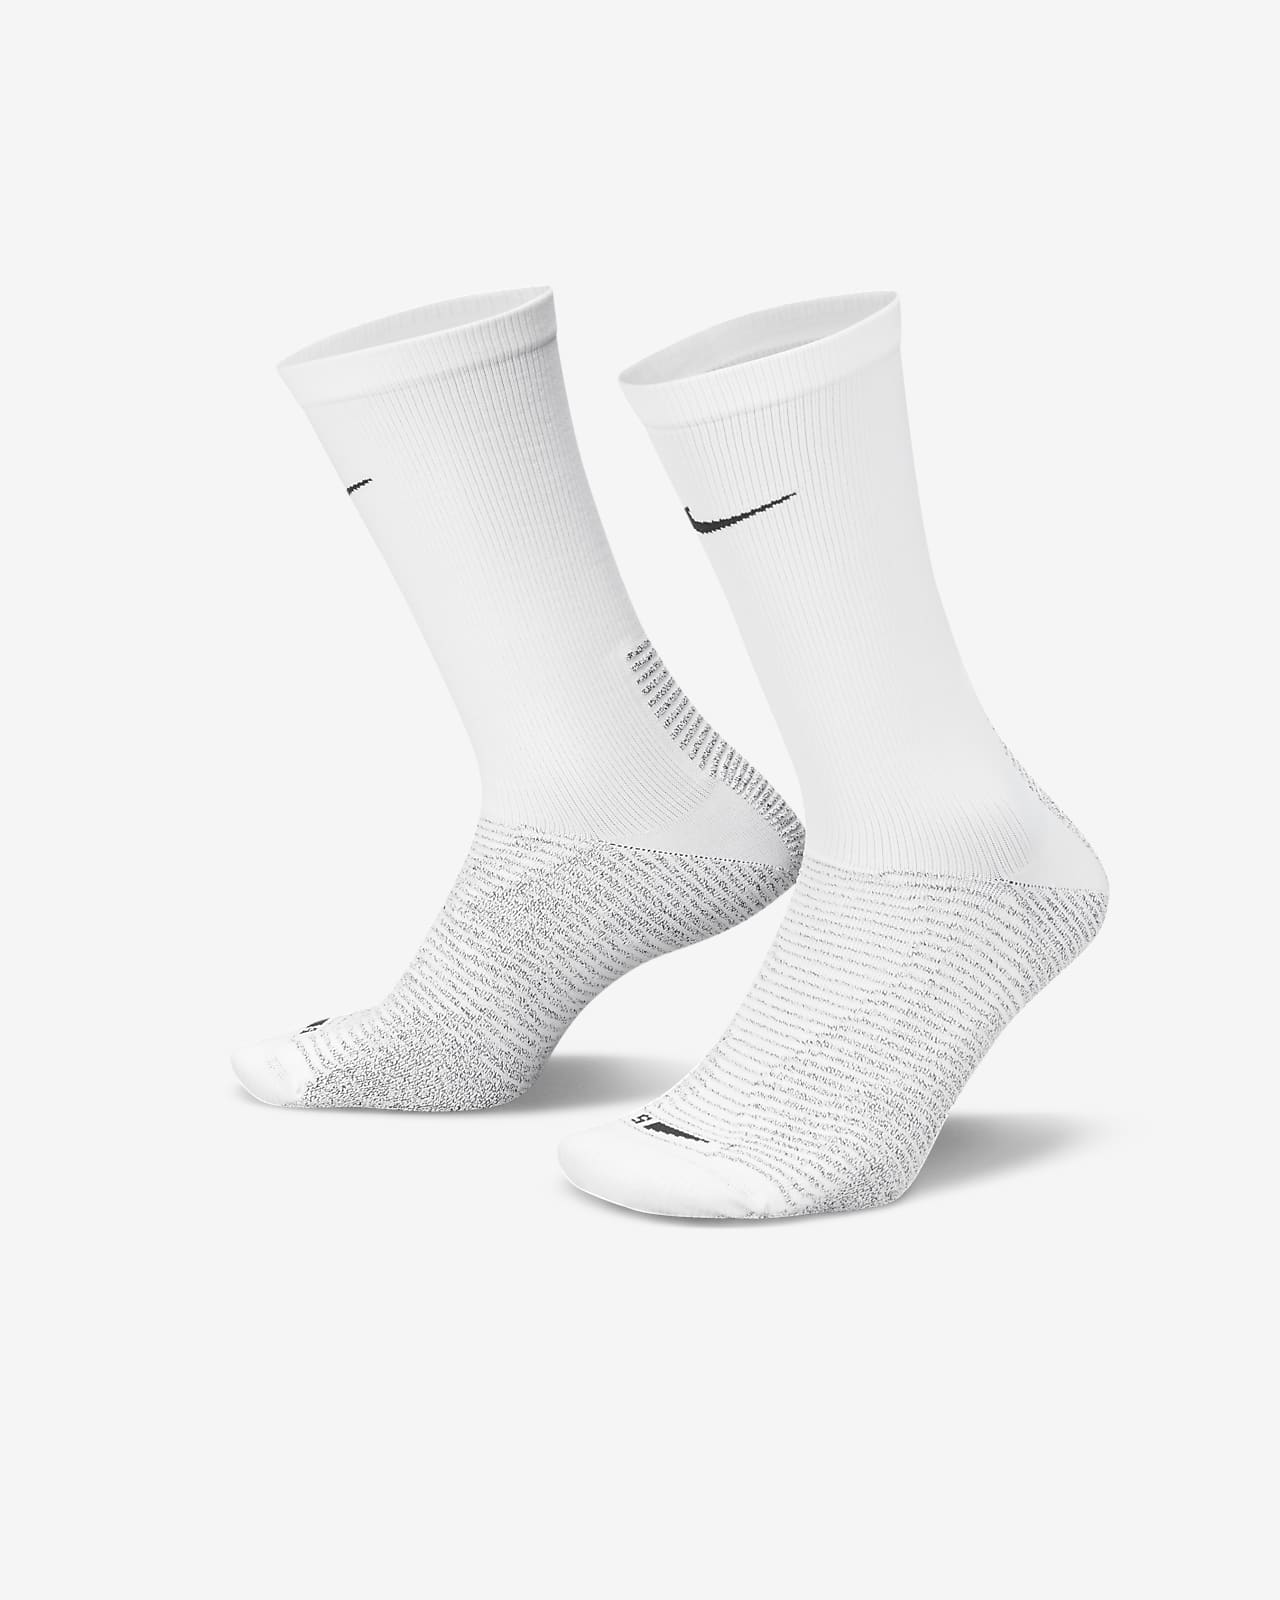 NikeGrip Strike Light Team Soccer Socks - Black/White - SoccerPro